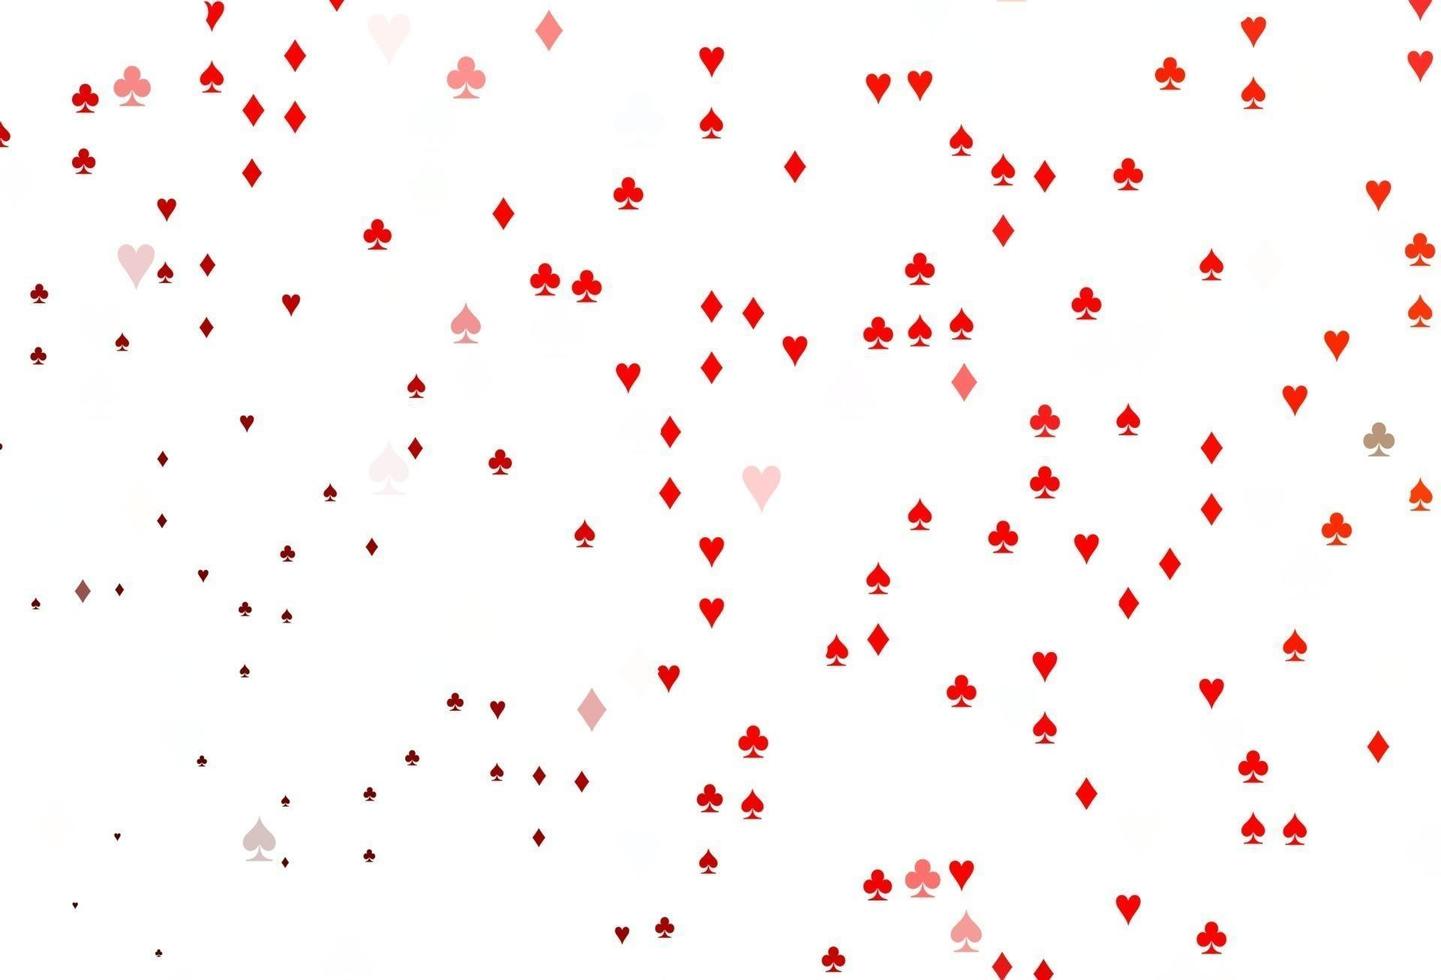 patrón de vector rojo claro con símbolo de tarjetas.